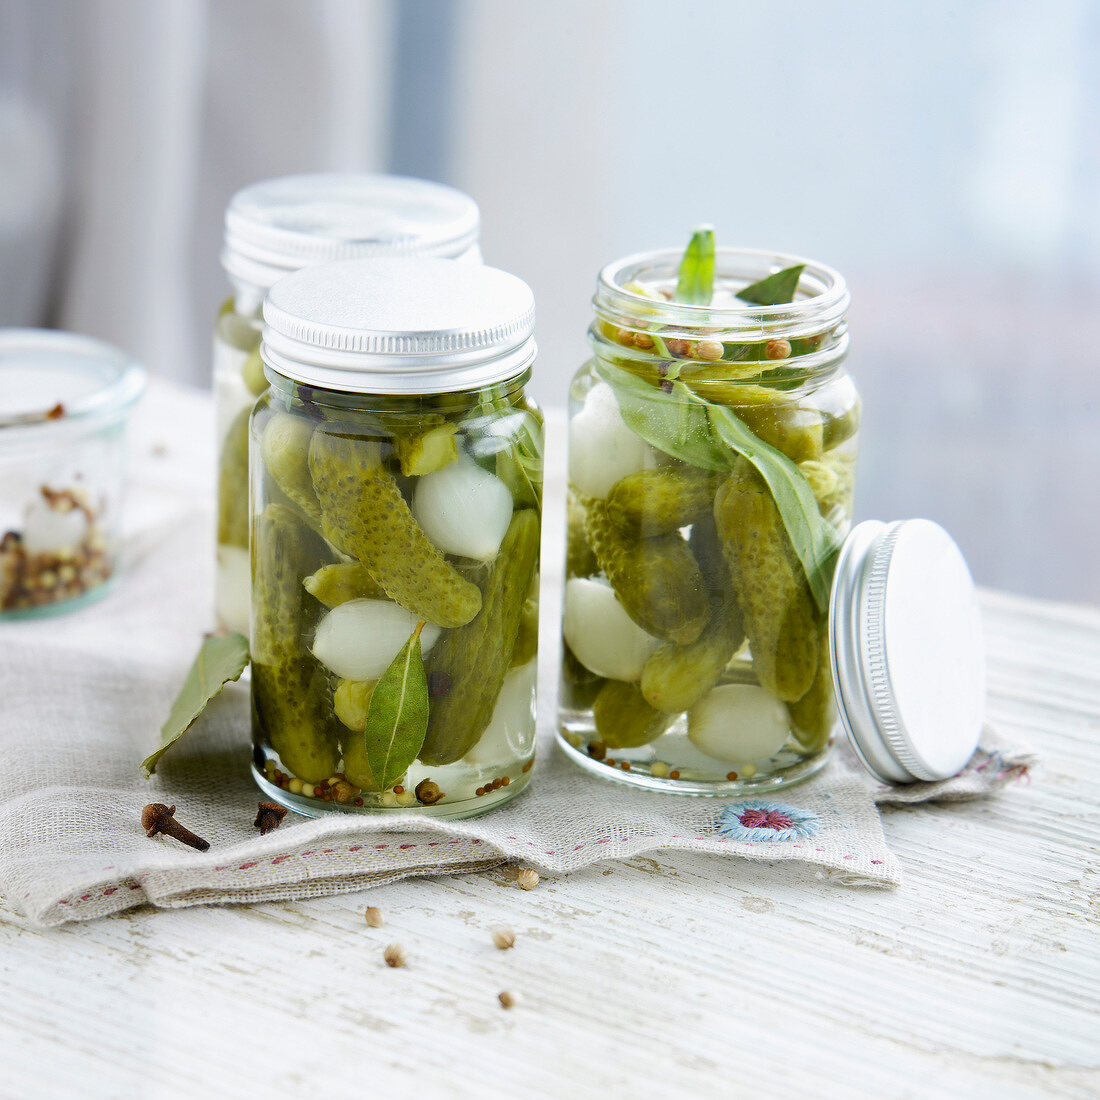 Jars of homemade pickled gherkins